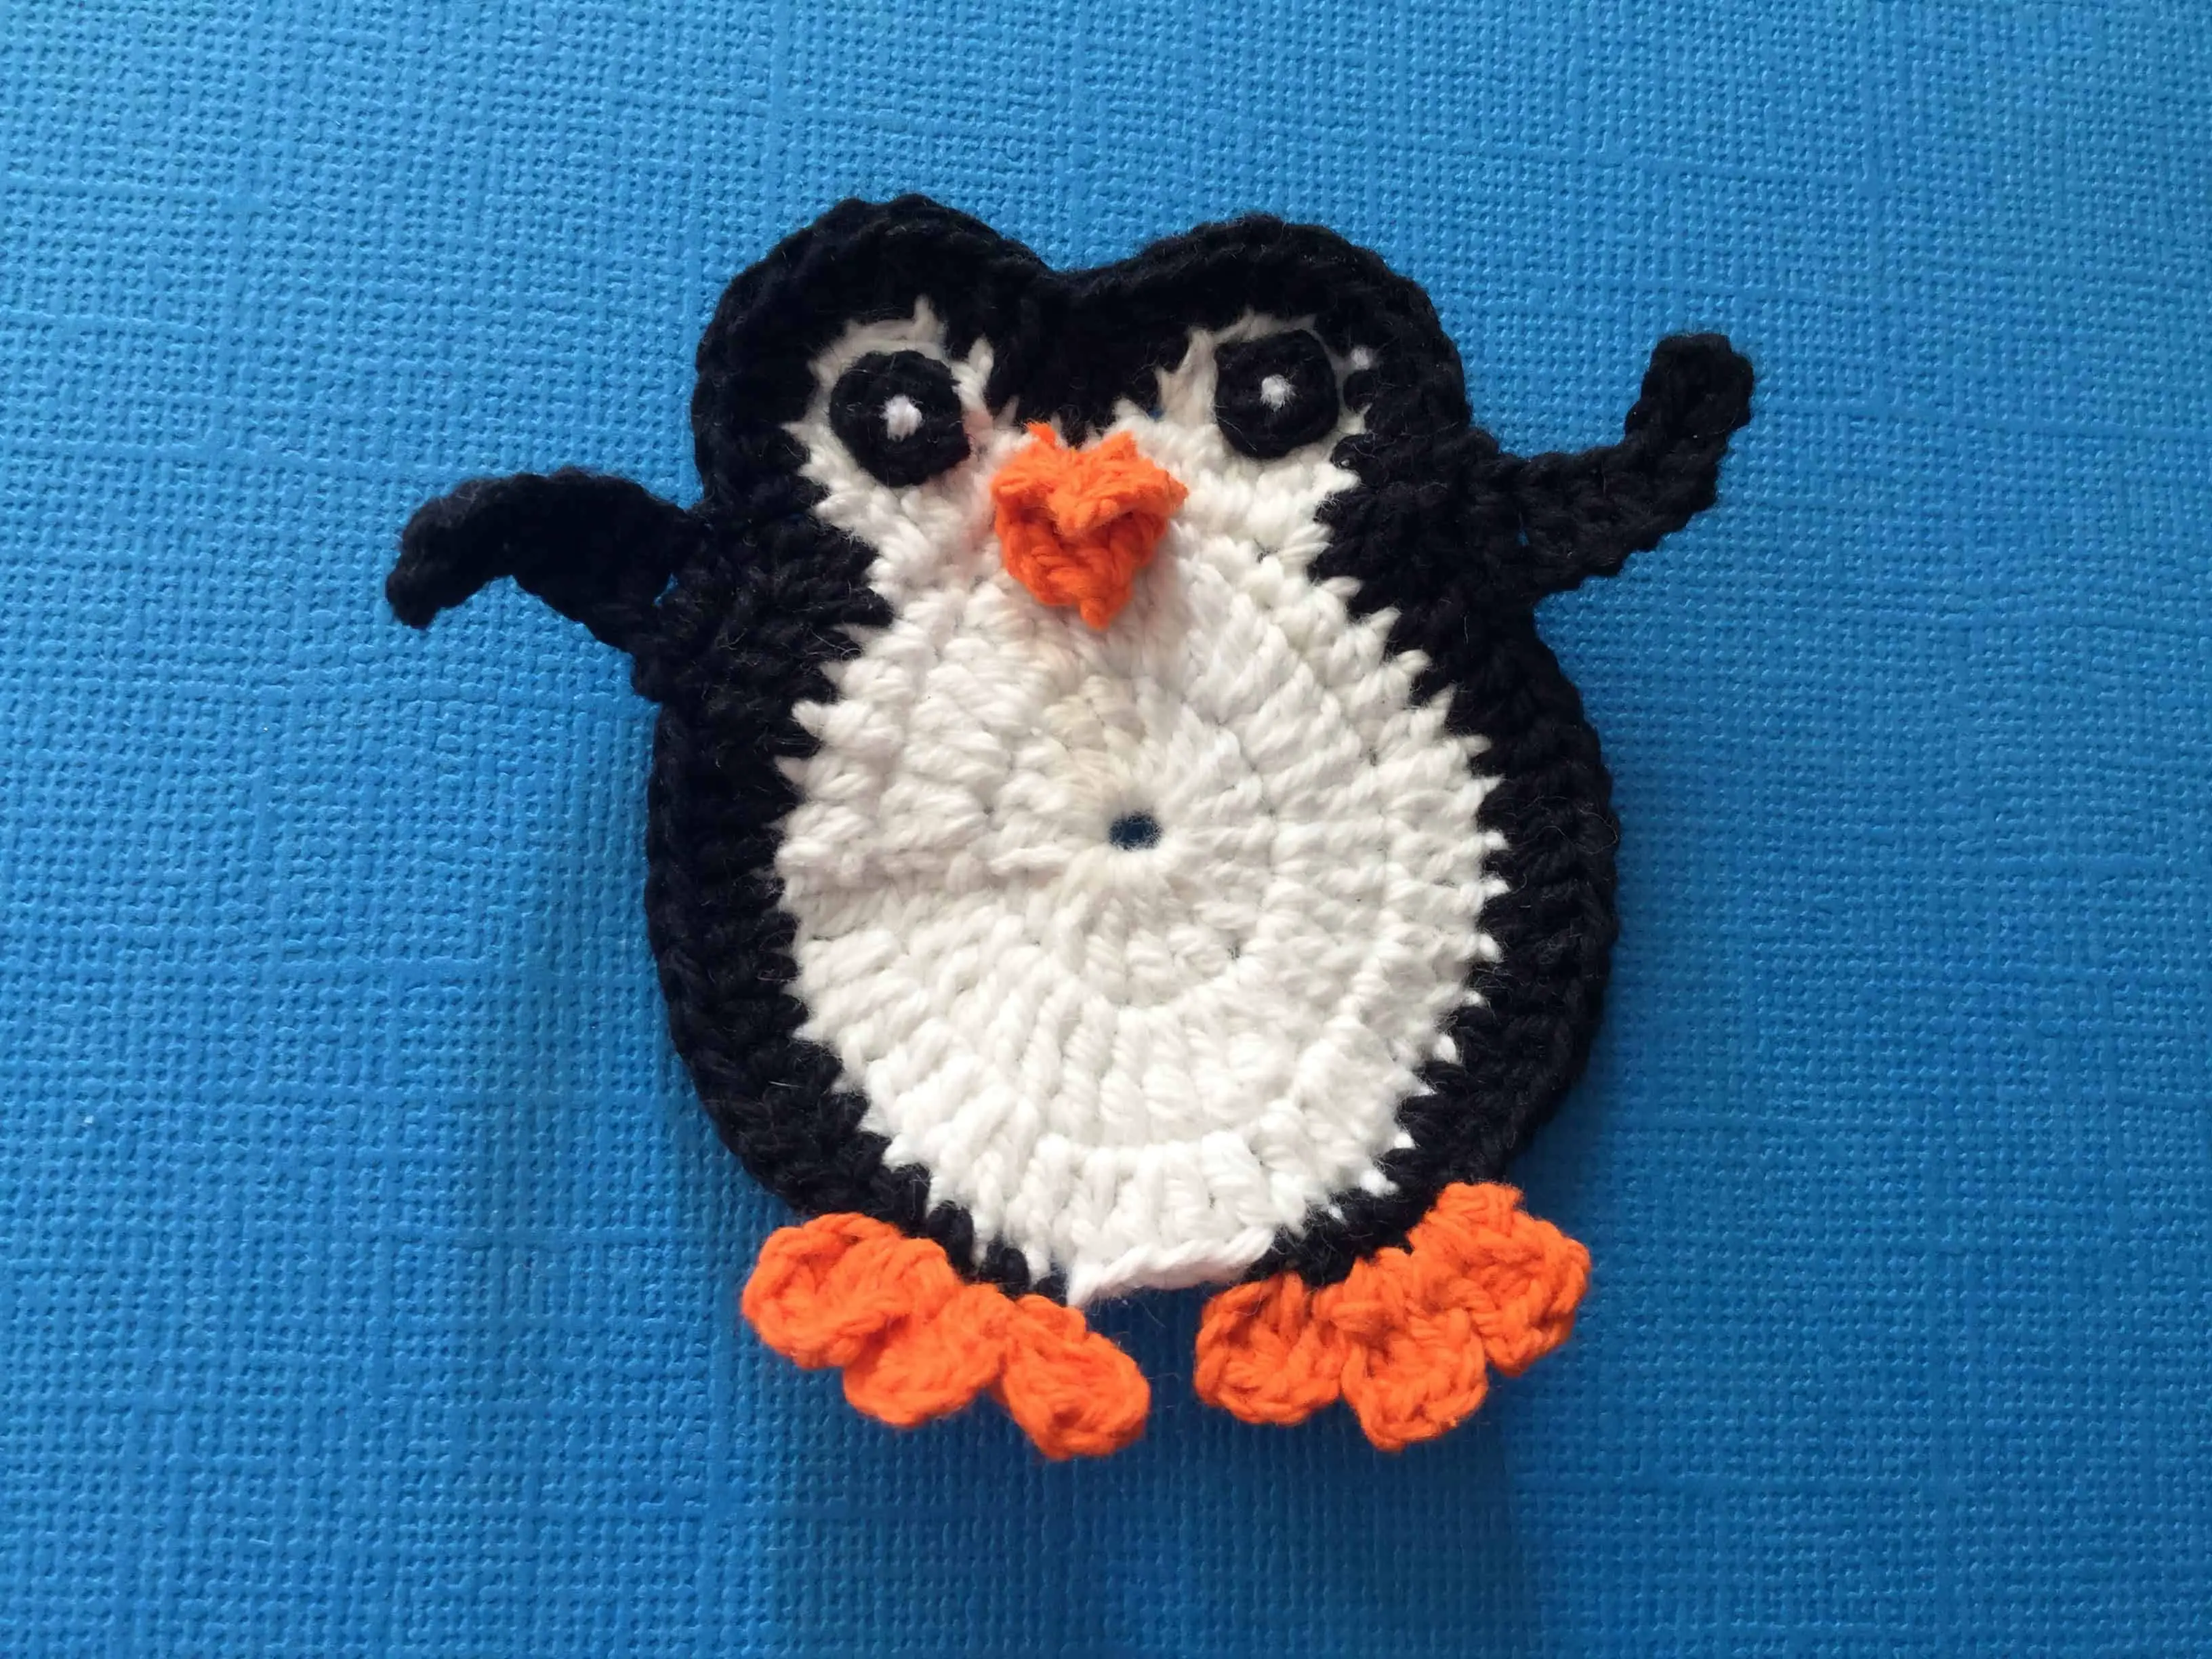 Finished crochet penguin